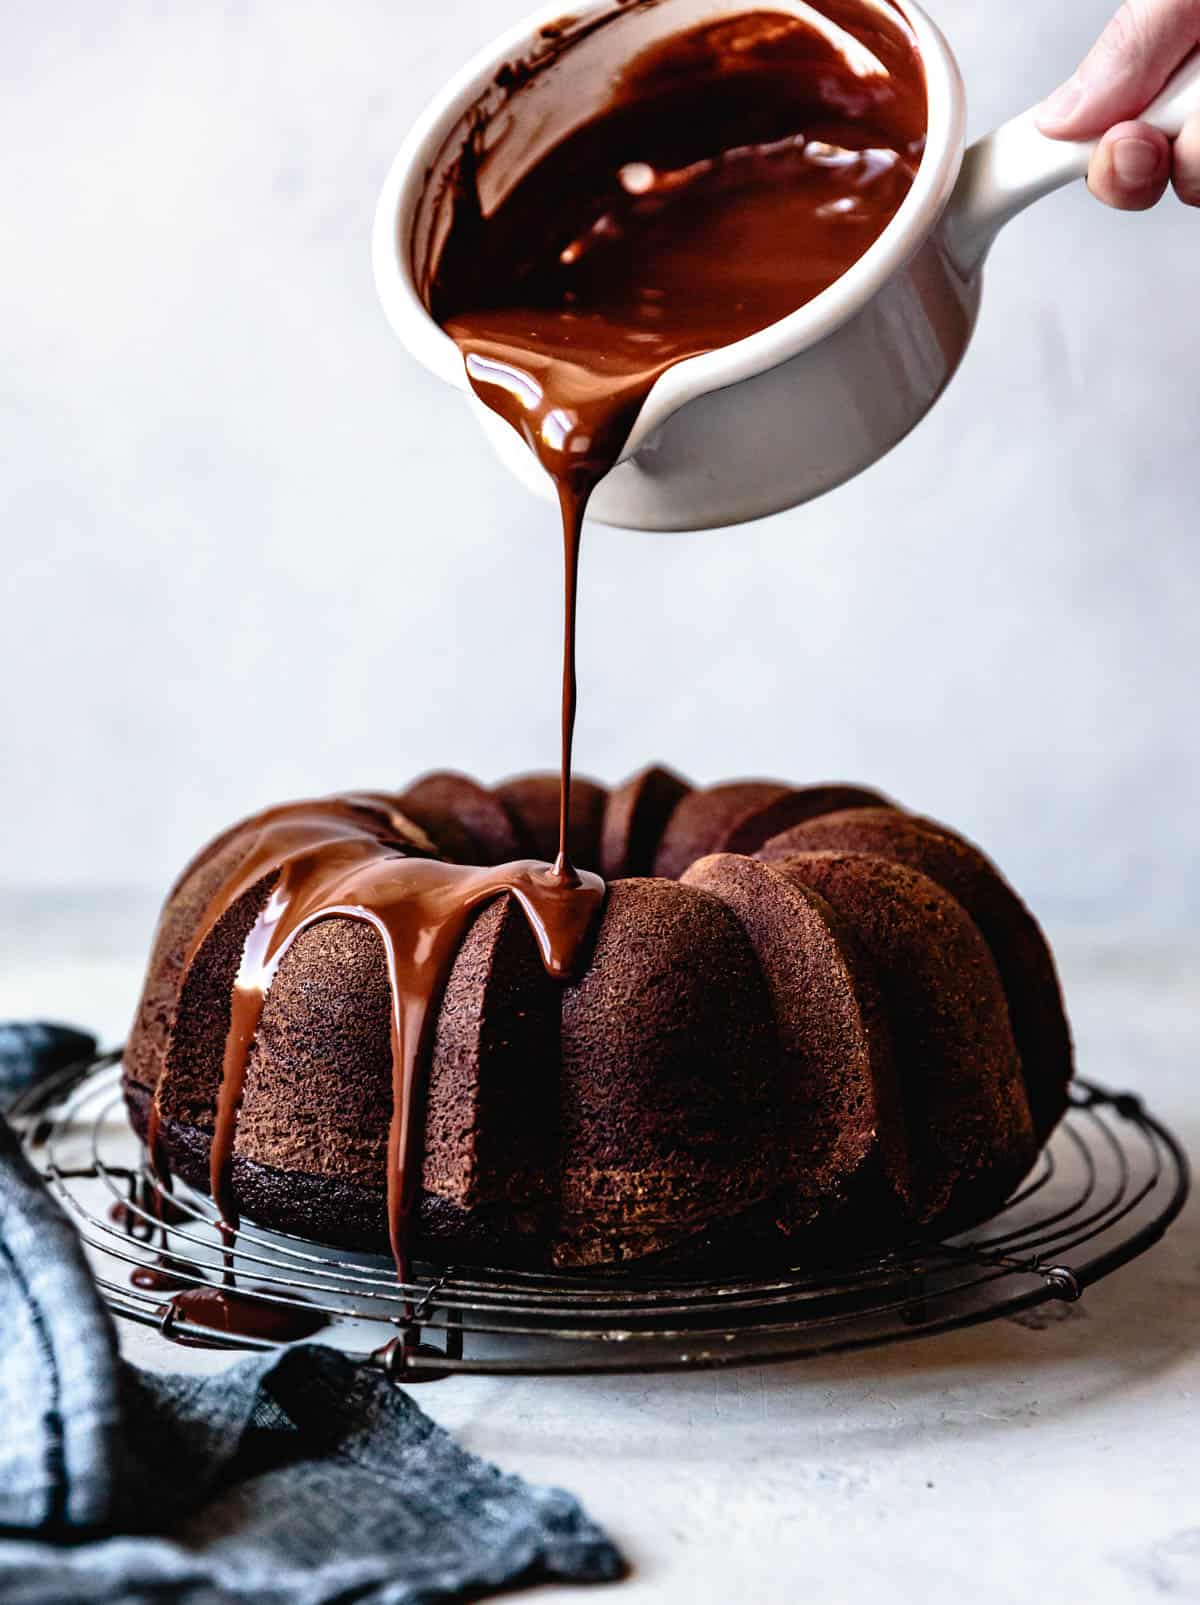 gluten-free chocolate desserts: pouring ganache over bundt cake